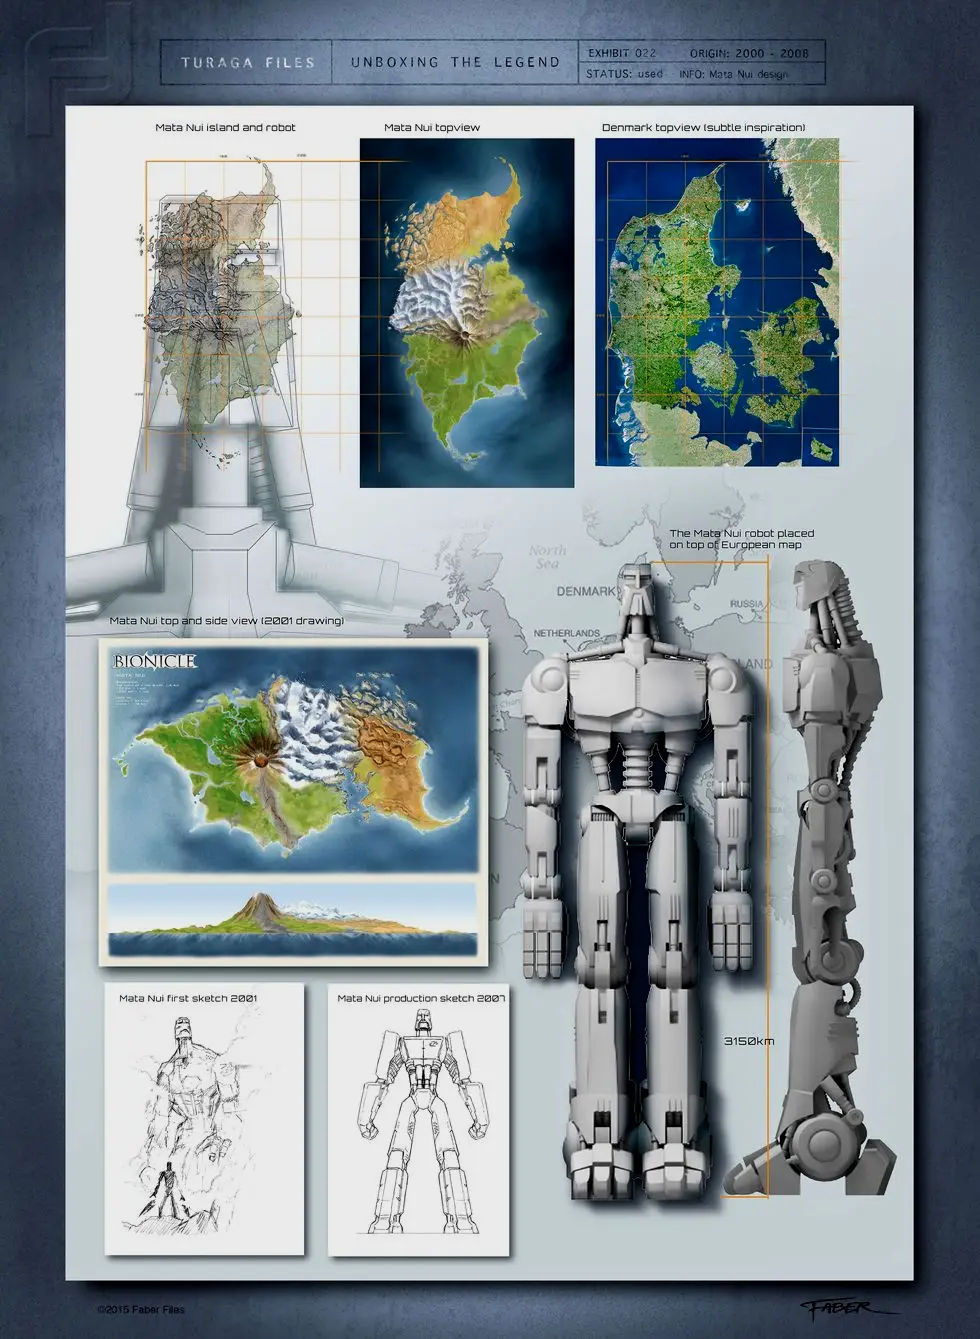 马他吕的设计概念，生化战士系列的设计、世界观同《变形金刚》、《星球大战》等确实存在参考关系